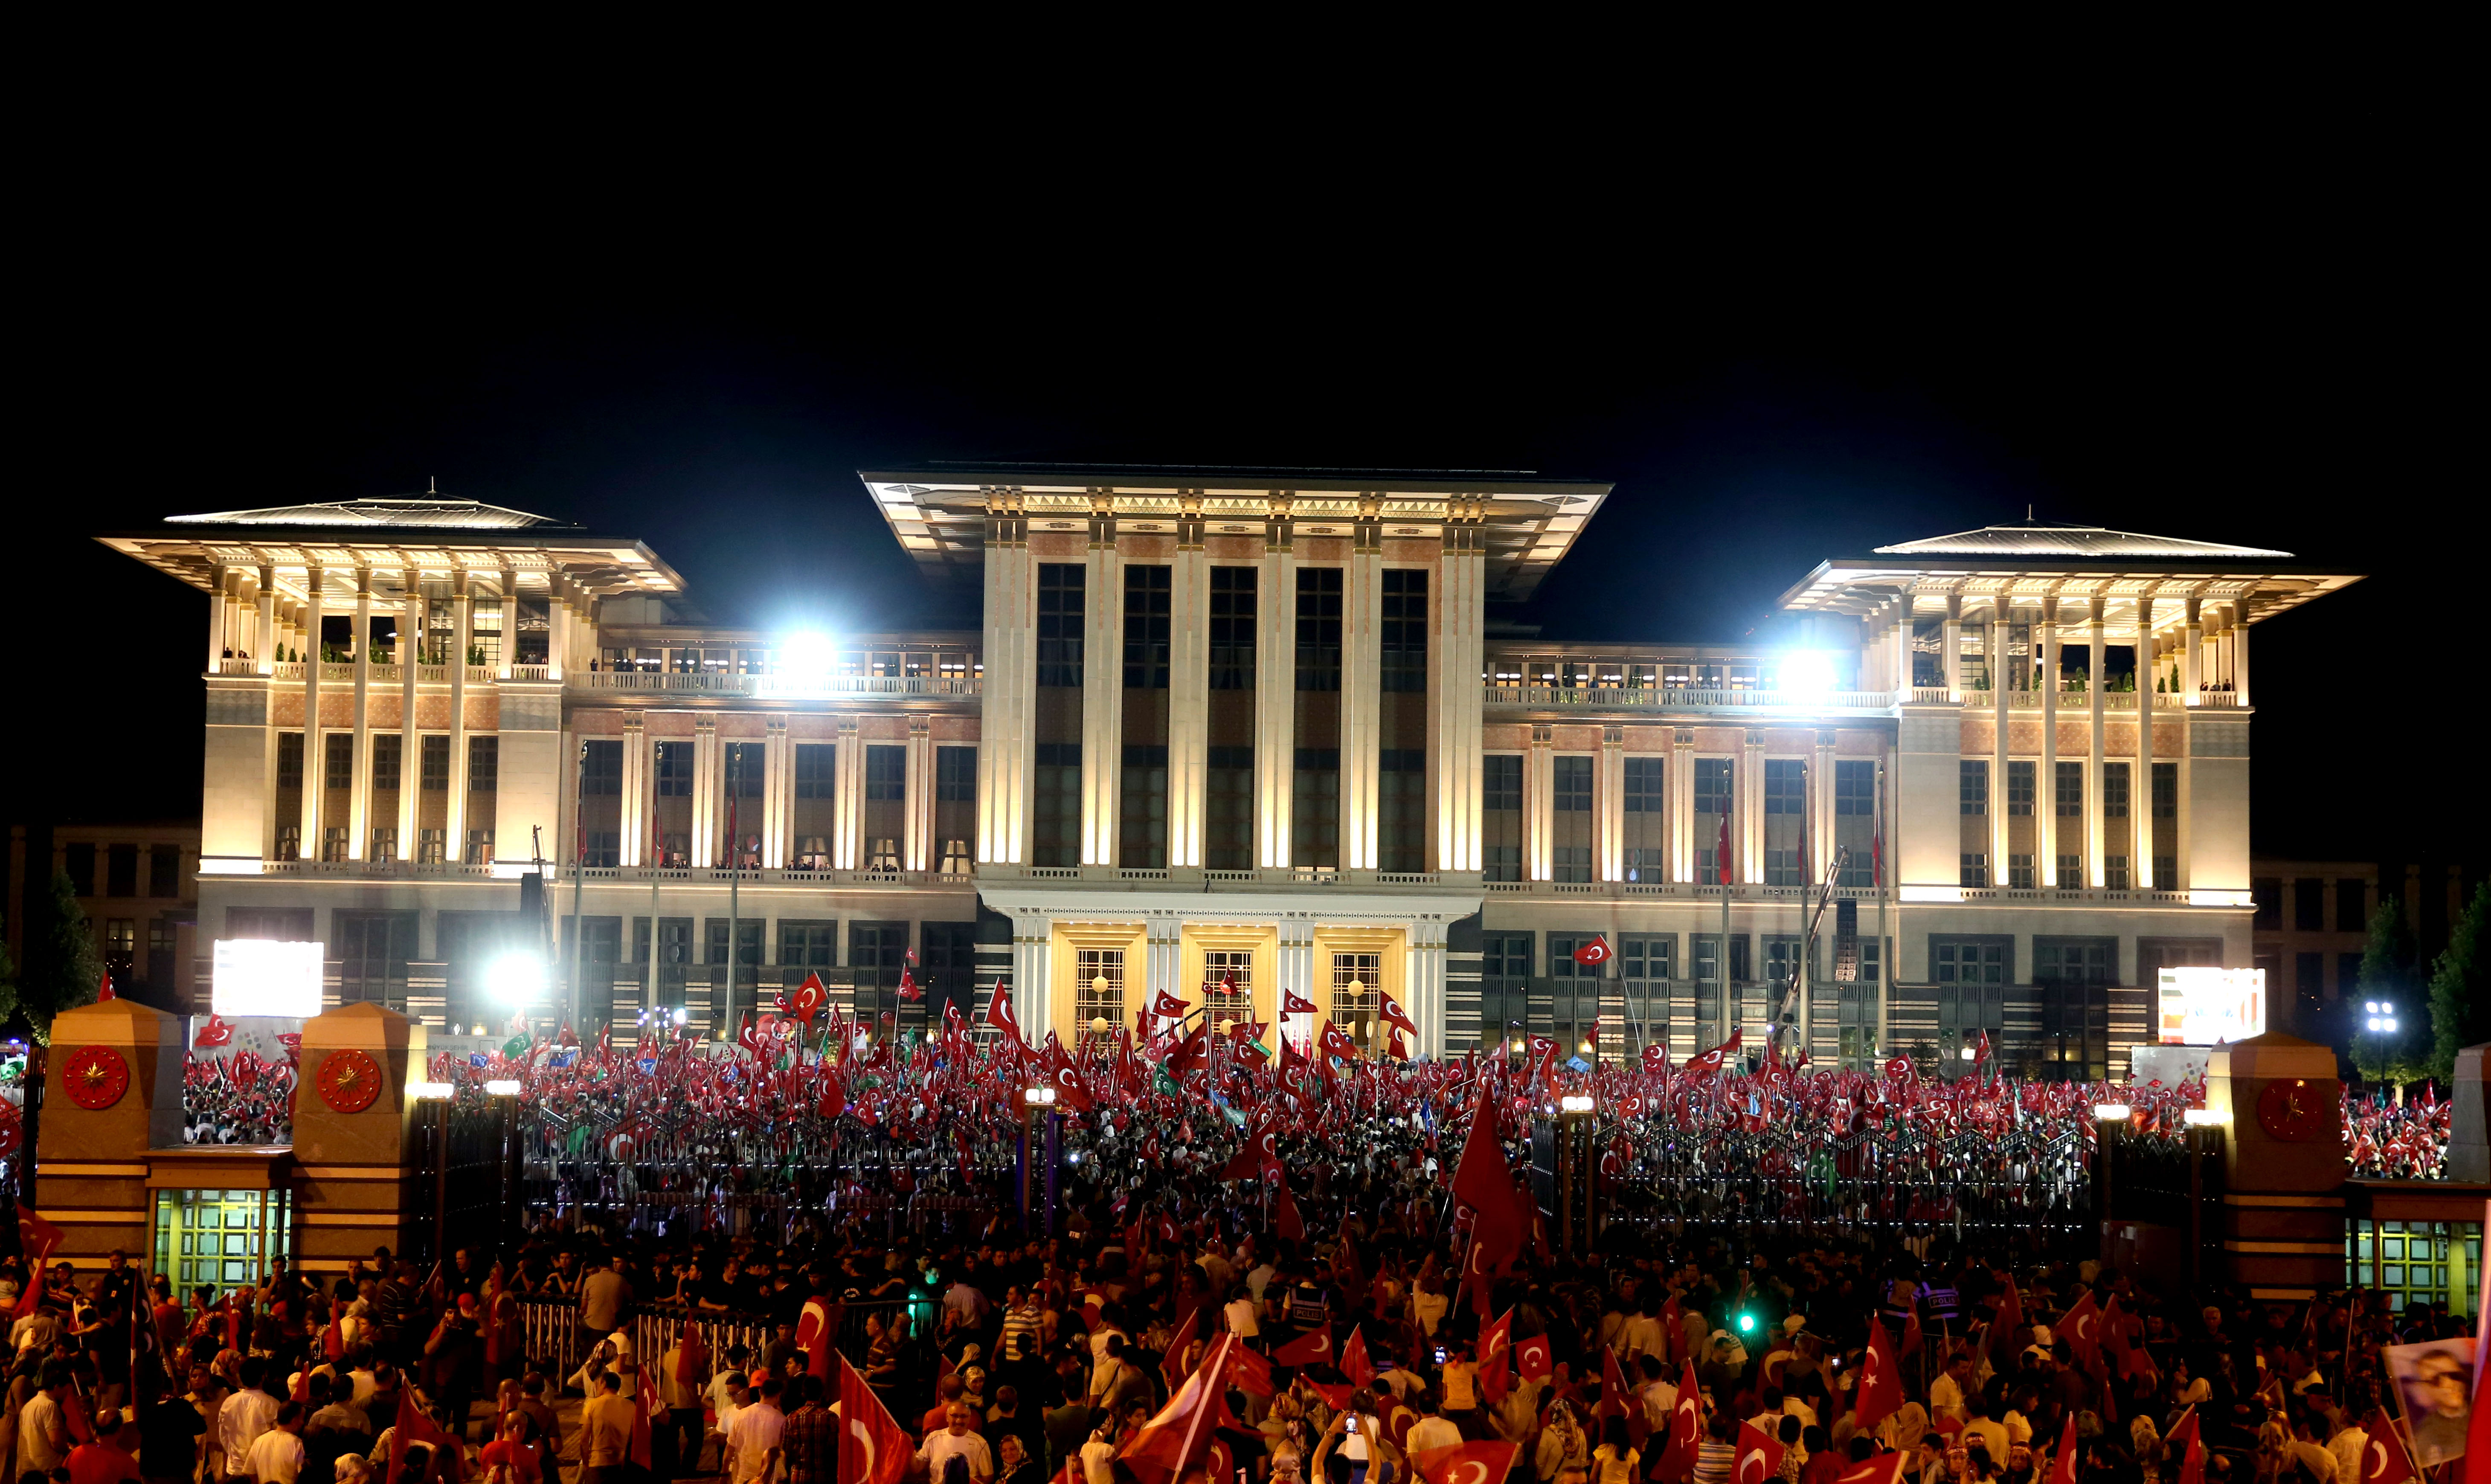 تحدث رئيس الجمهورية أردوغان الى المواطنين في حديقة مجمع رئاسة الجمهورية في اليوم الأخير لنوبات حراسة الديموقراطية.